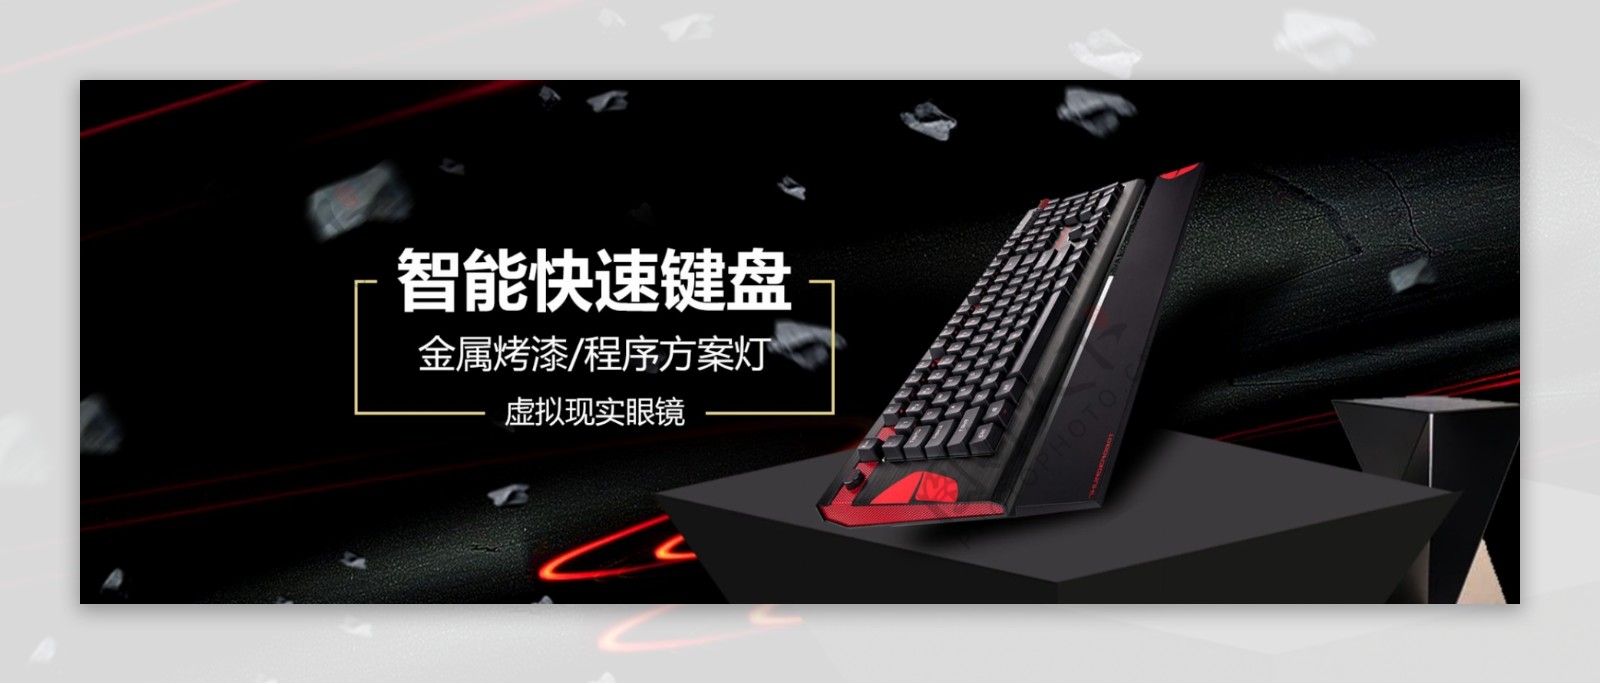 黑红酷黑智能数码电脑键盘电子产品海报